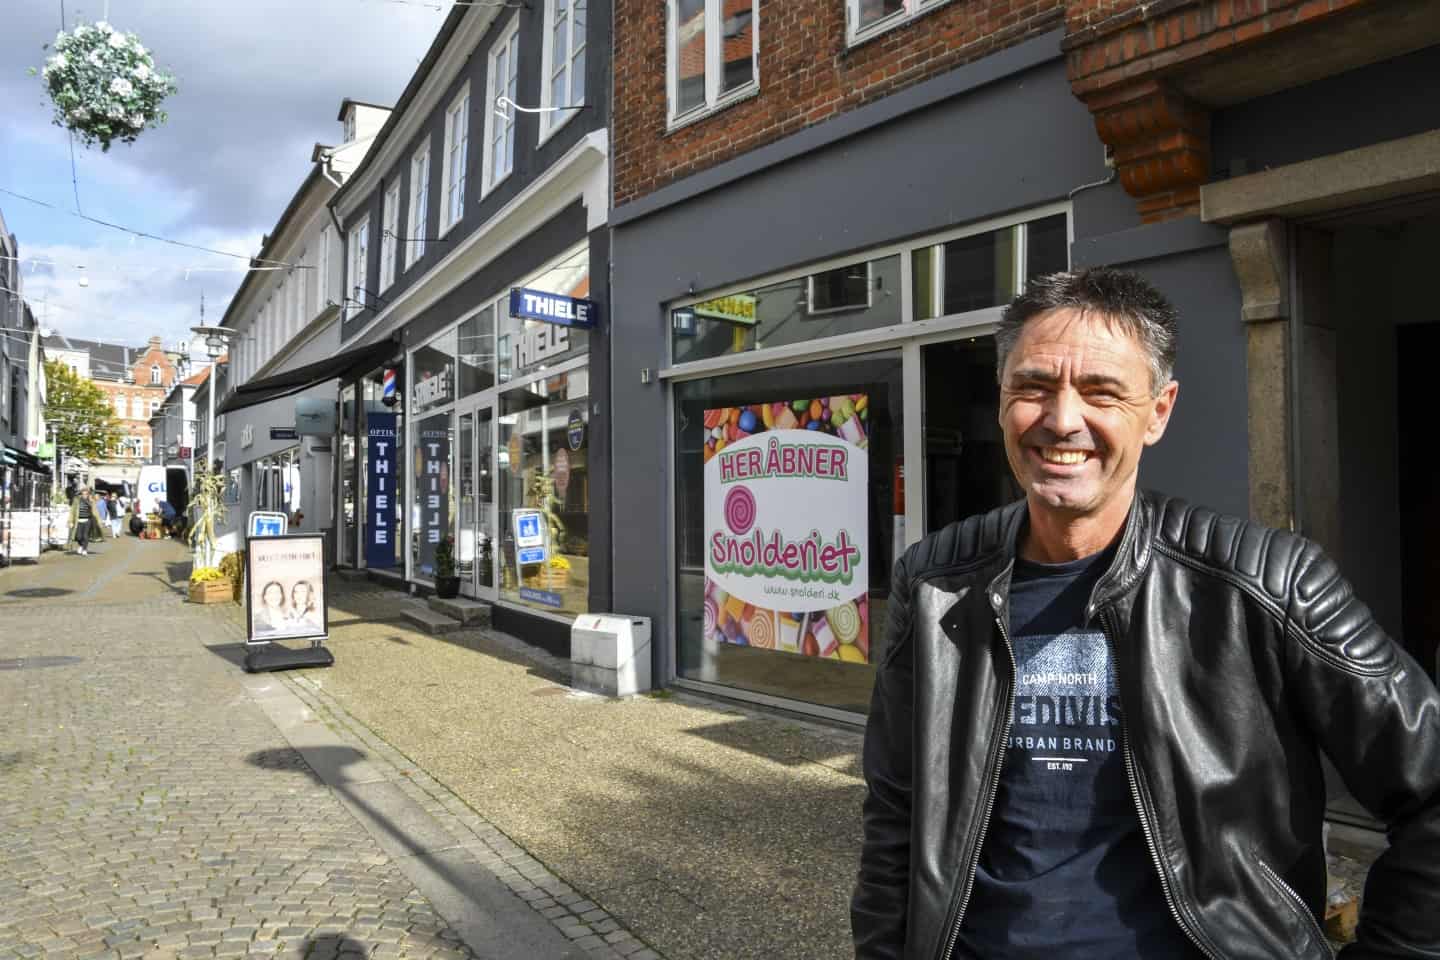 Åbningsdatoen fast: Byens nyeste slikbutik fejrer åbning med gratis fadøl, slik og slushice | amtsavisen.dk